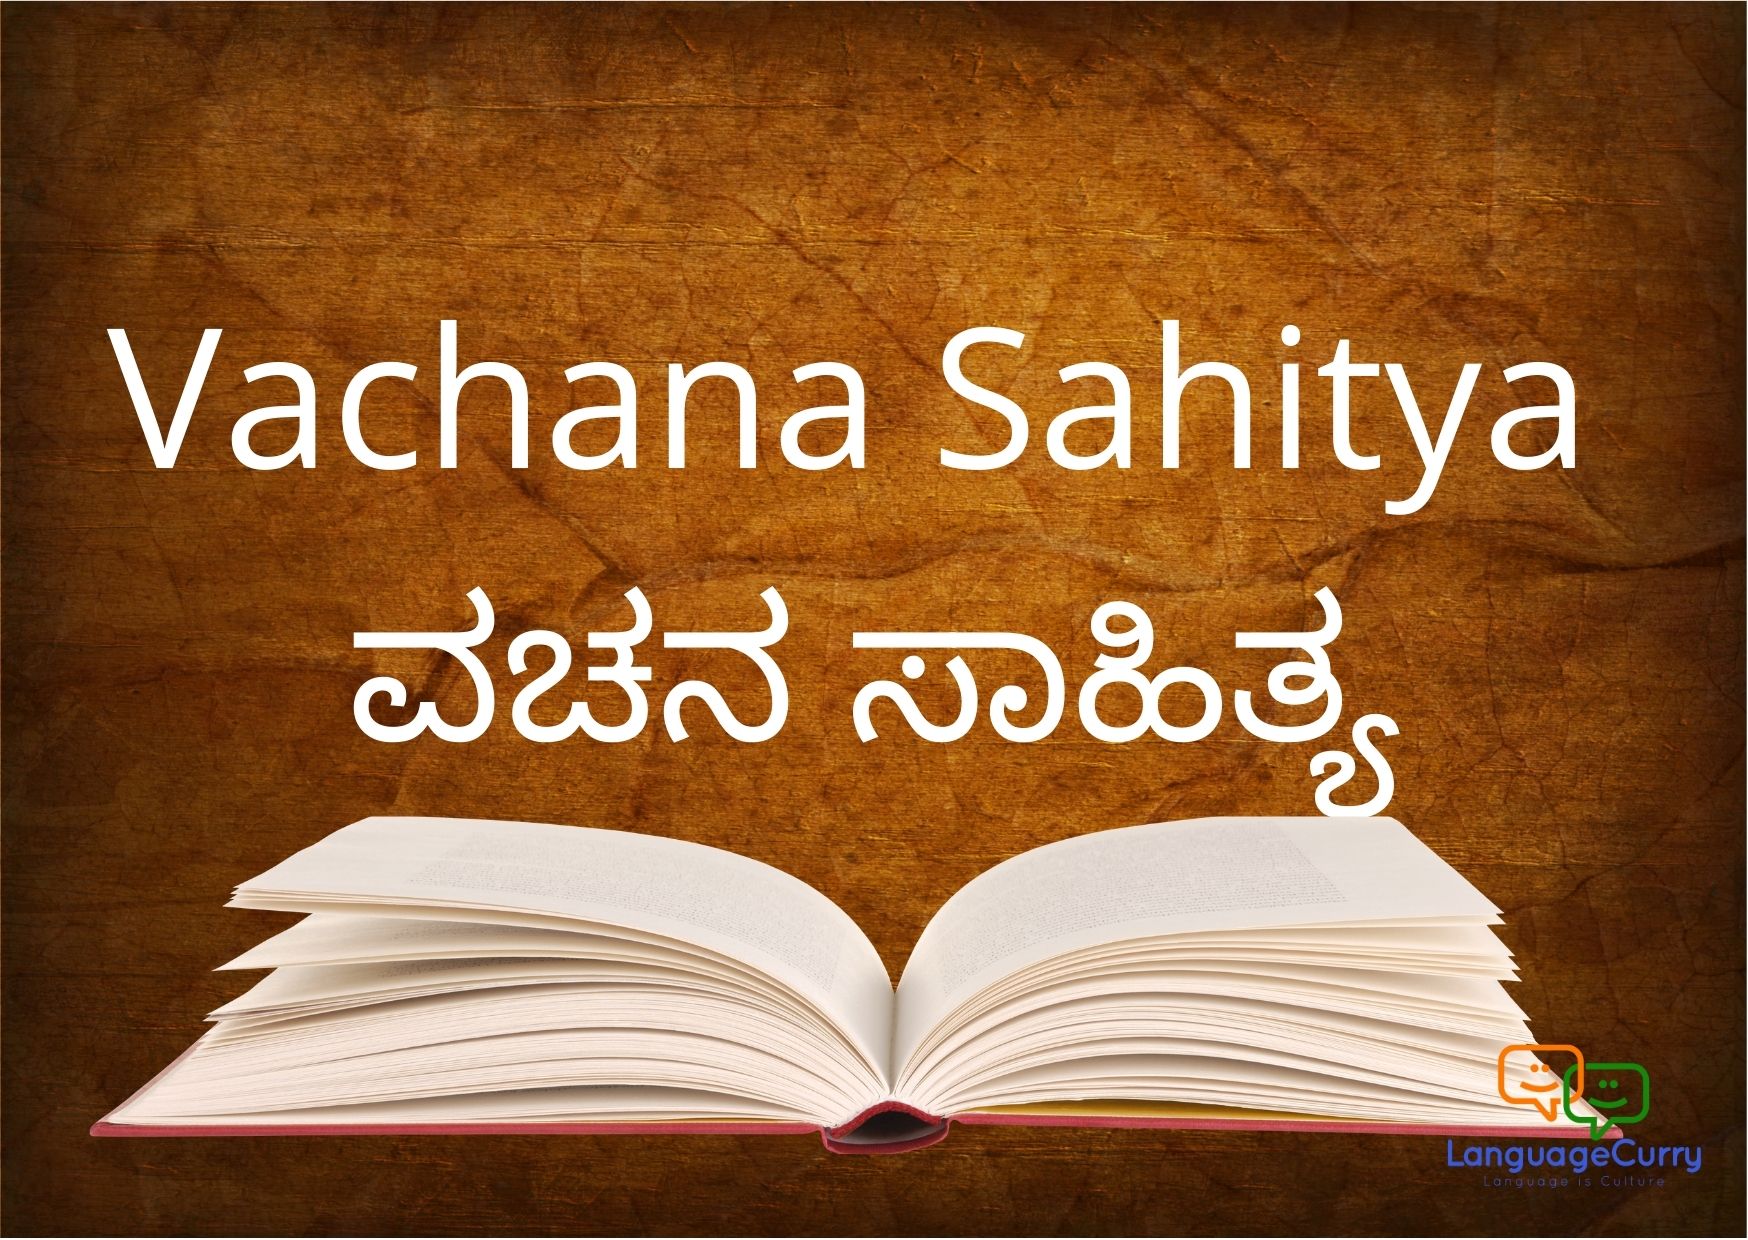 Vachana Sahitya ವಚನ ಸಾಹಿತ್ಯ kannada literature learn kannada